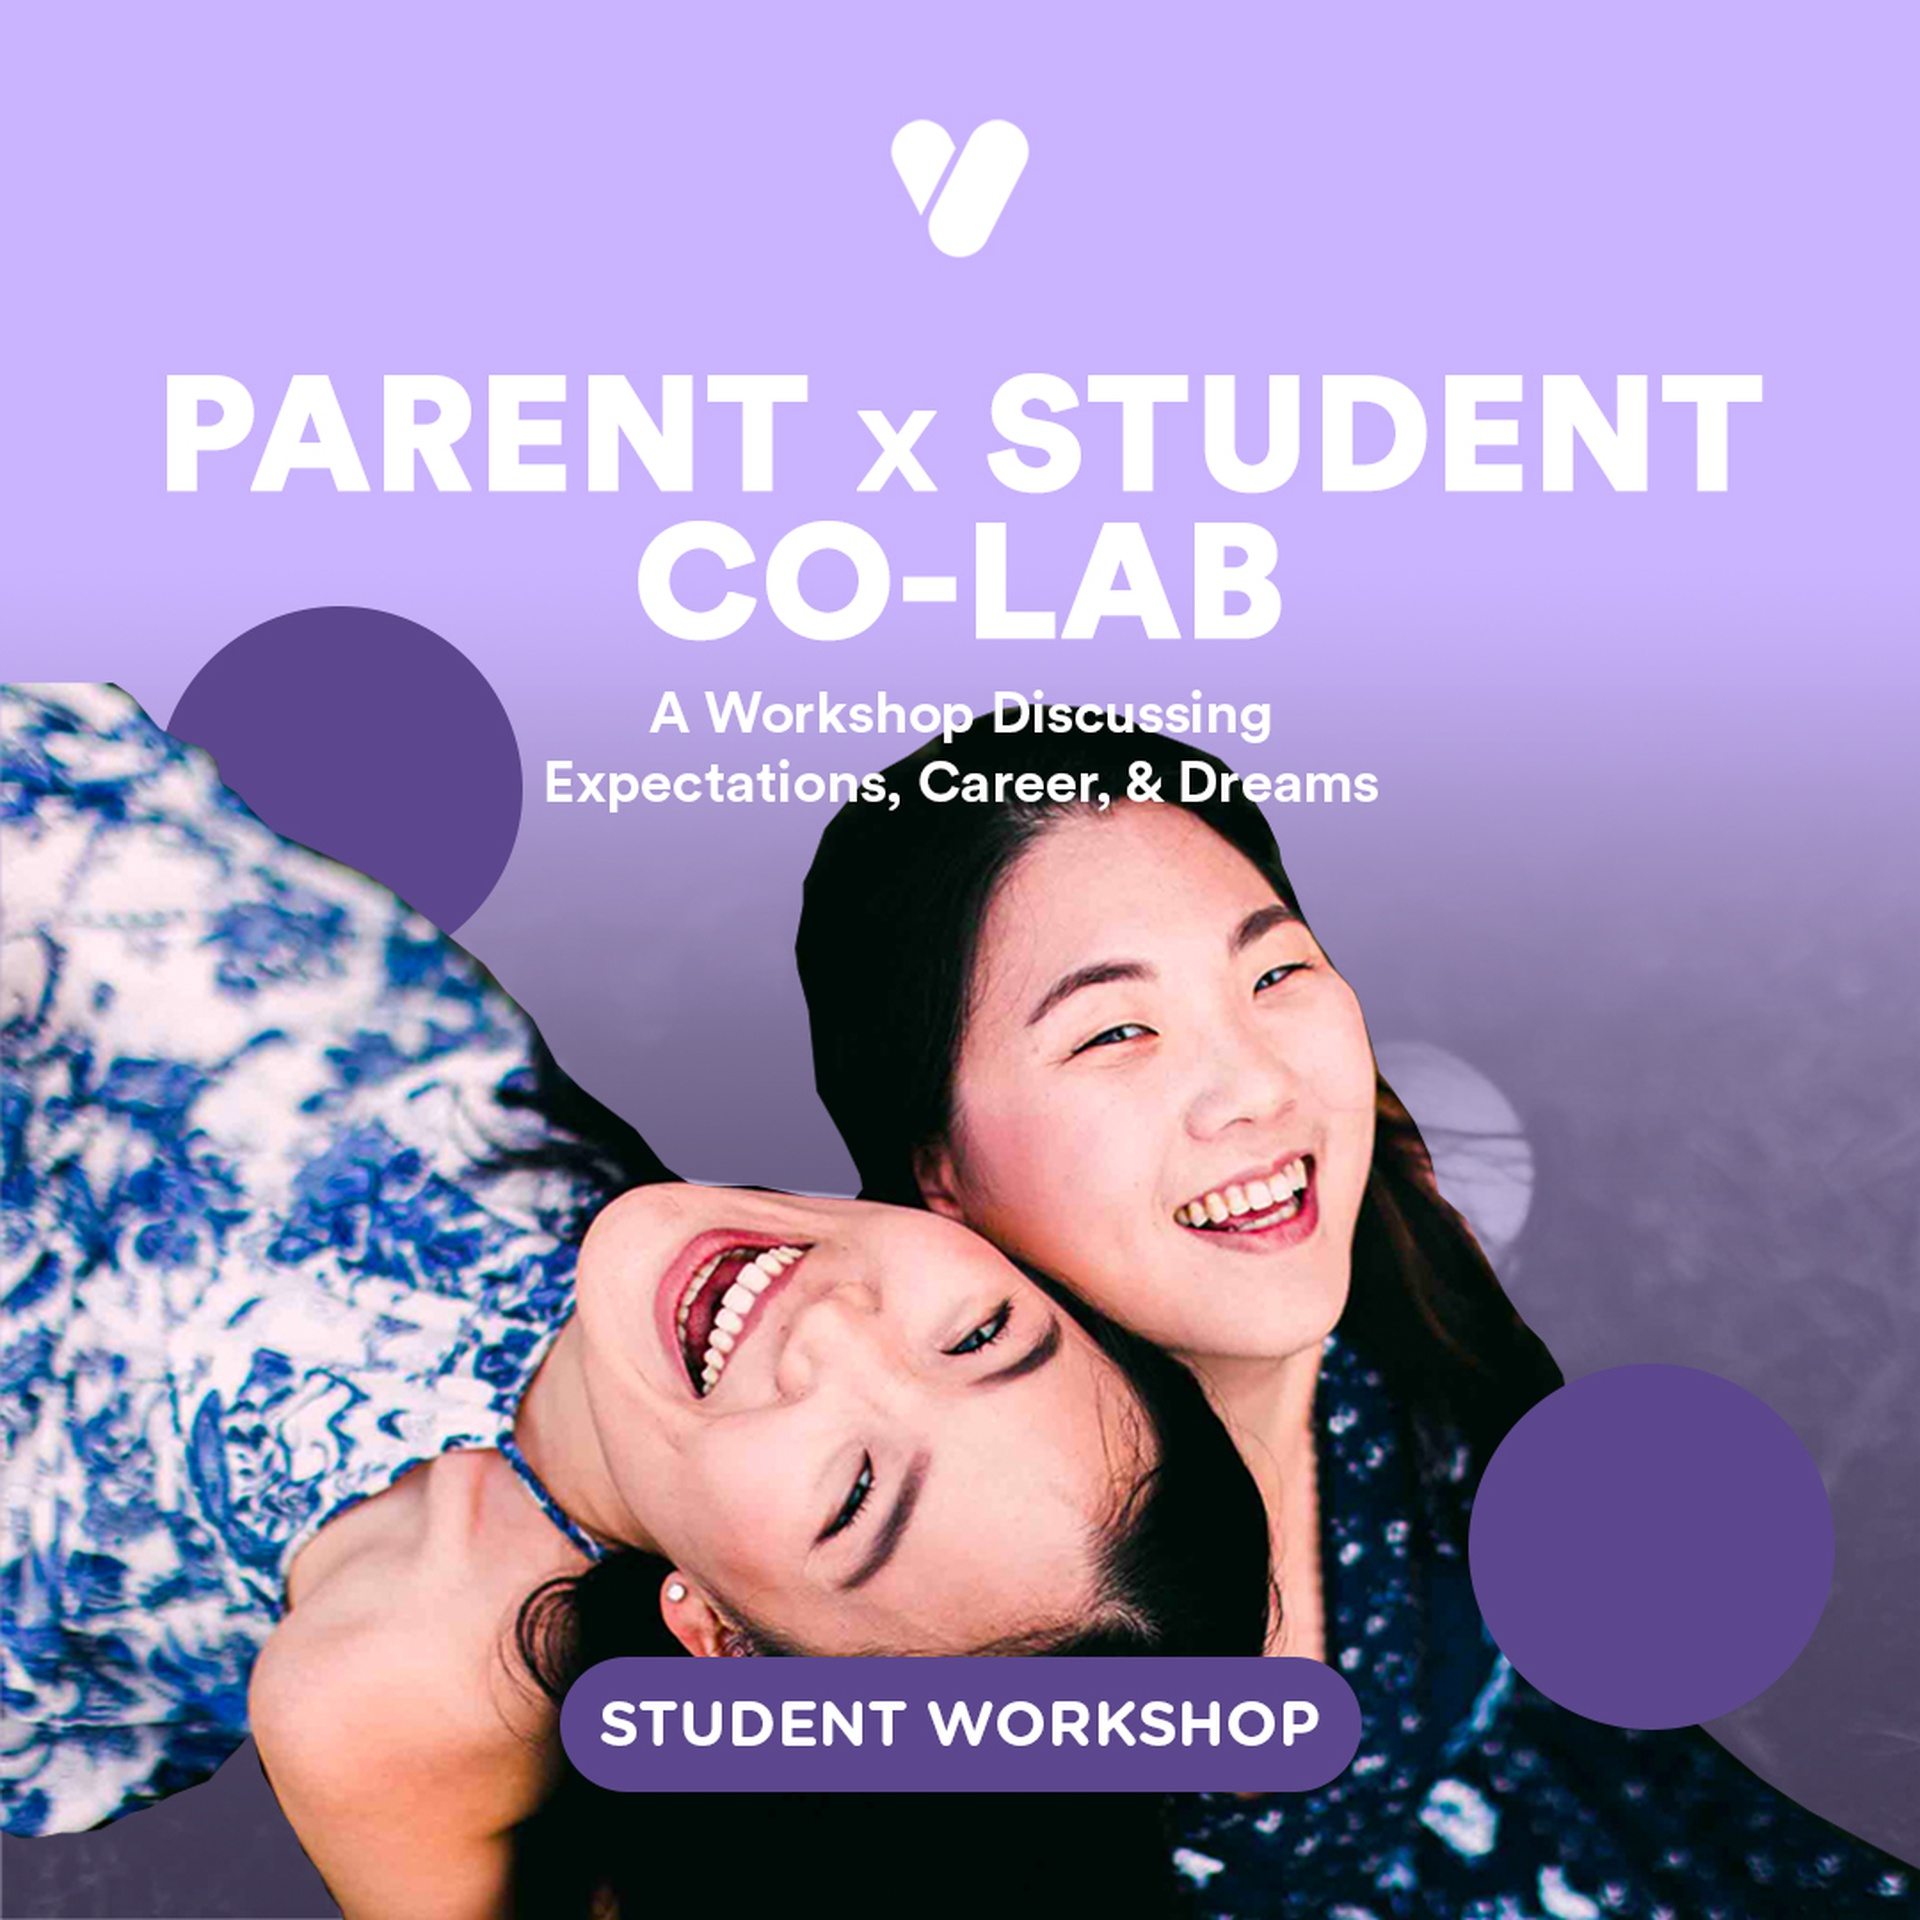 Parent x Student Future Co-Lab Workshop